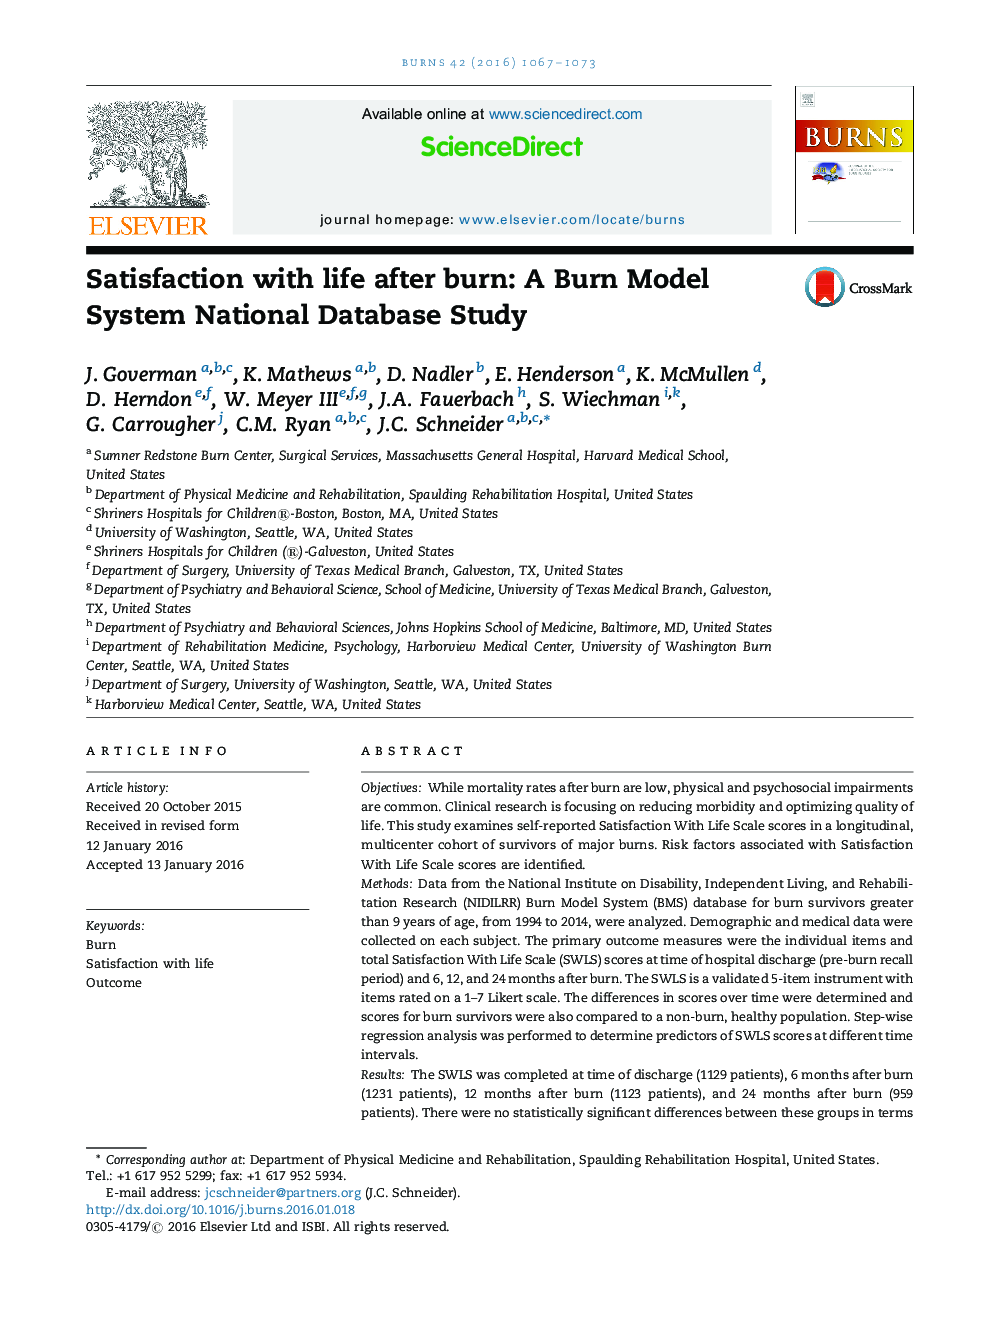 رضایت از زندگی بعد از سوختگی: مطالعه پایگاه داده های ملی سیستم مدل سوختگی